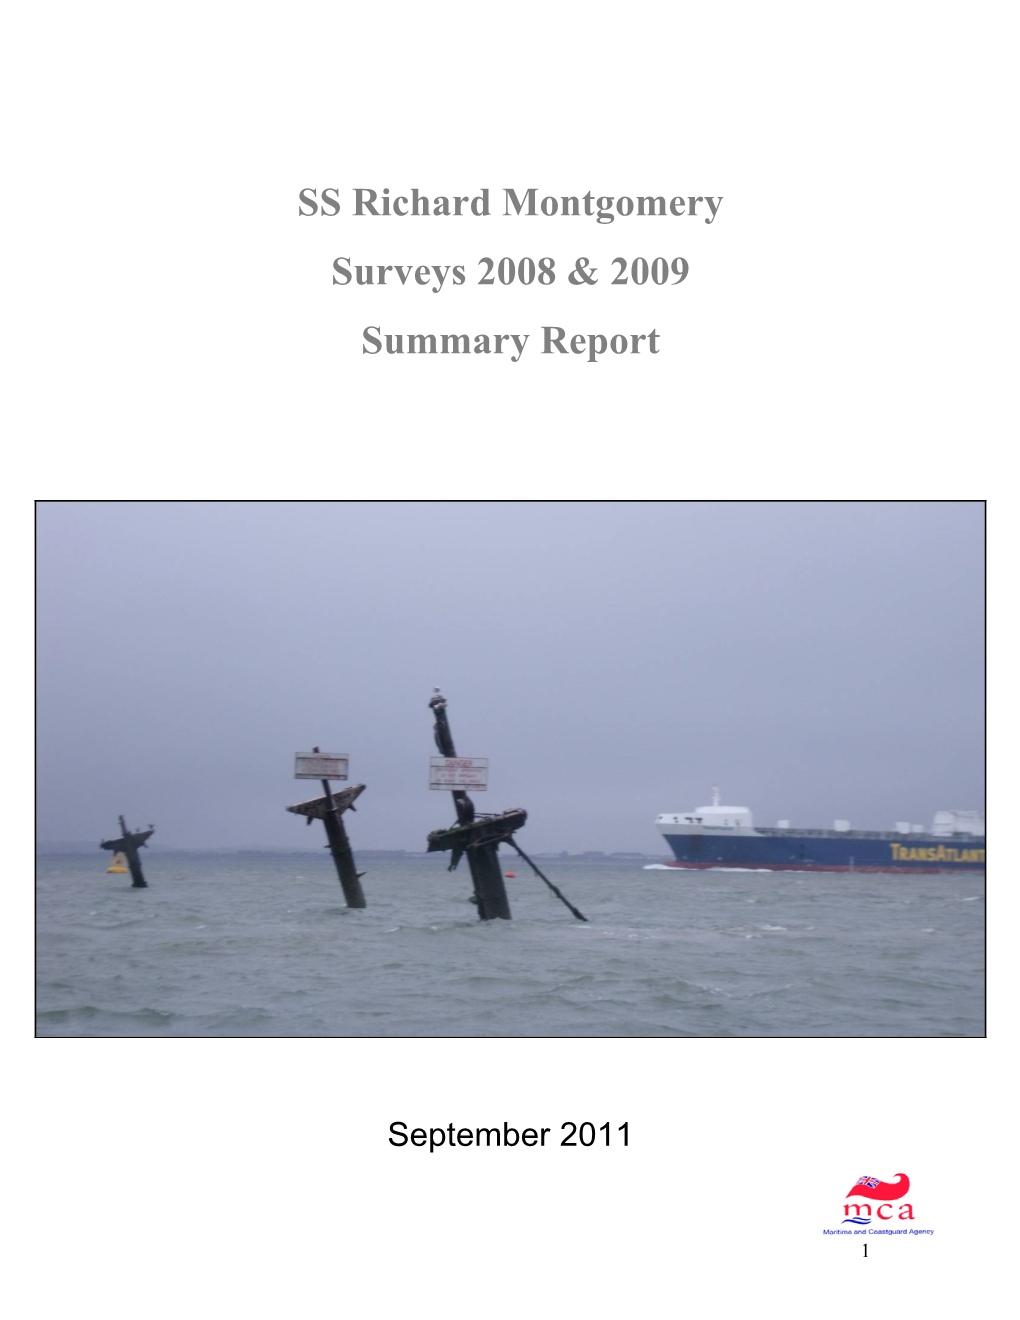 SS Richard Montgomery Surveys 2008 & 2009 Summary Report